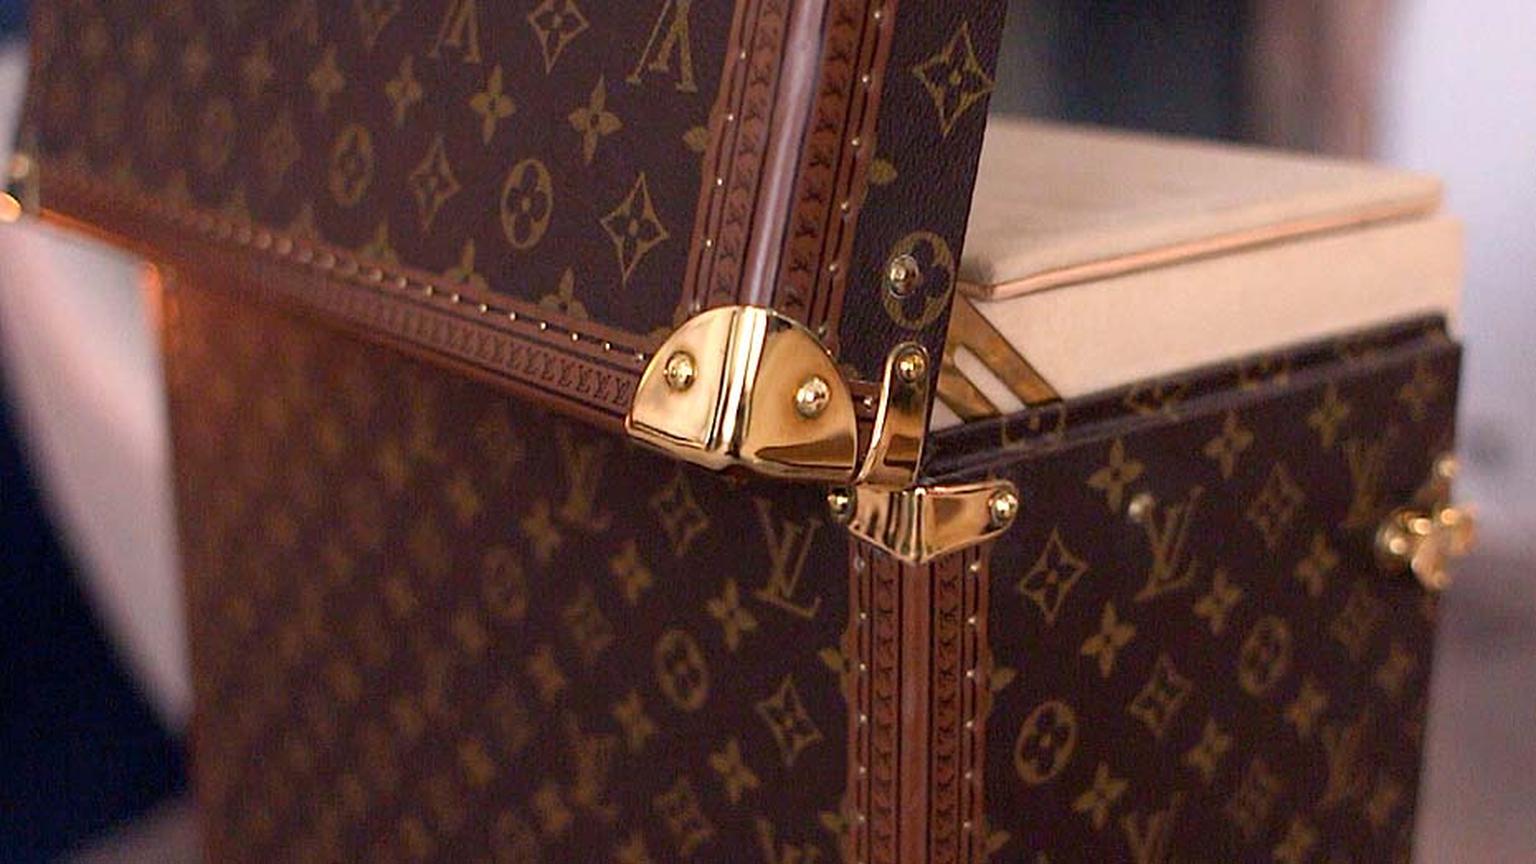 Louis Vuitton watches video_steamer trunk open.jpg